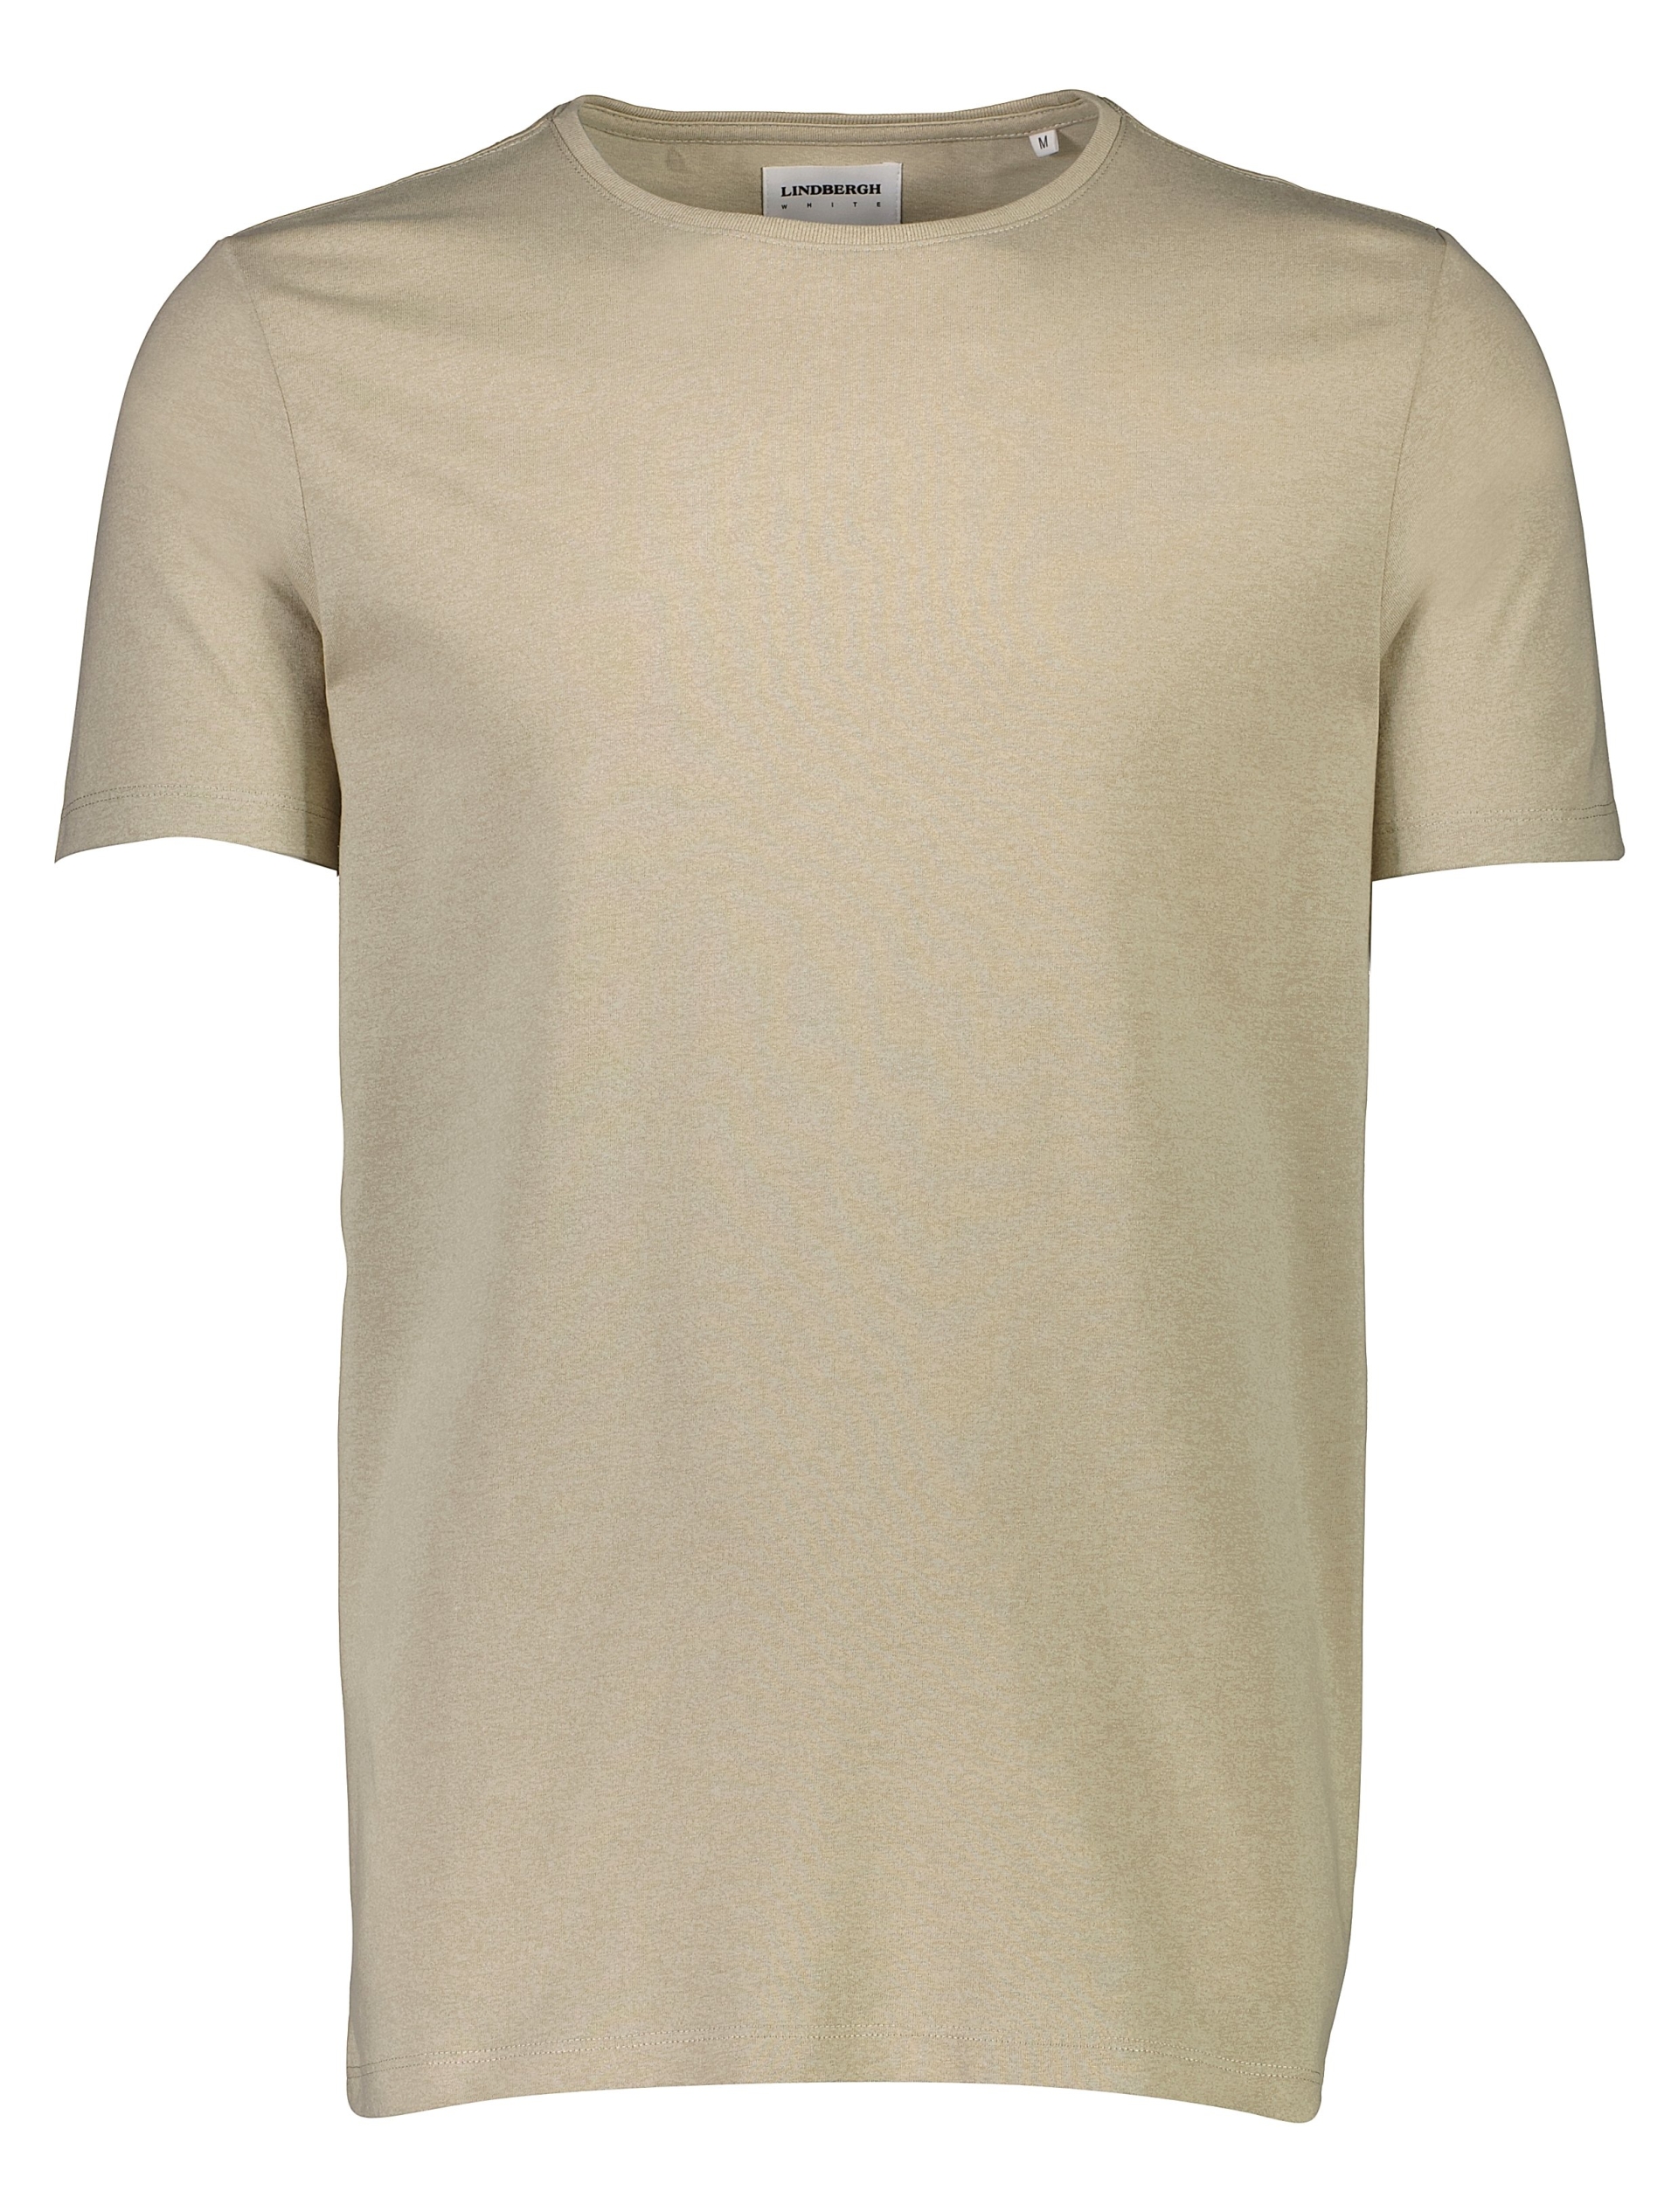 Lindbergh T-shirt braun / stone mix 224